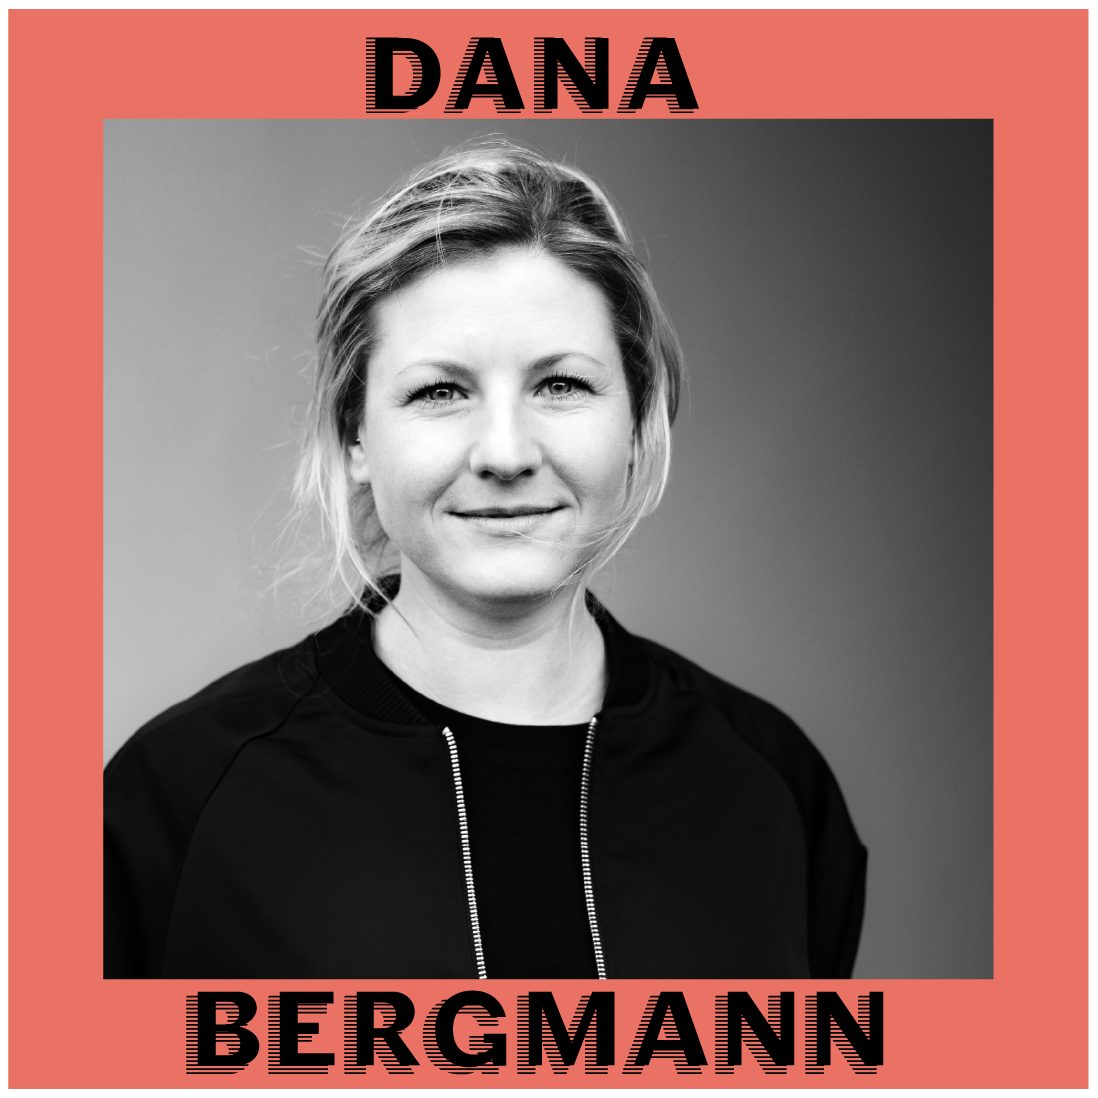 Dana Bergmann